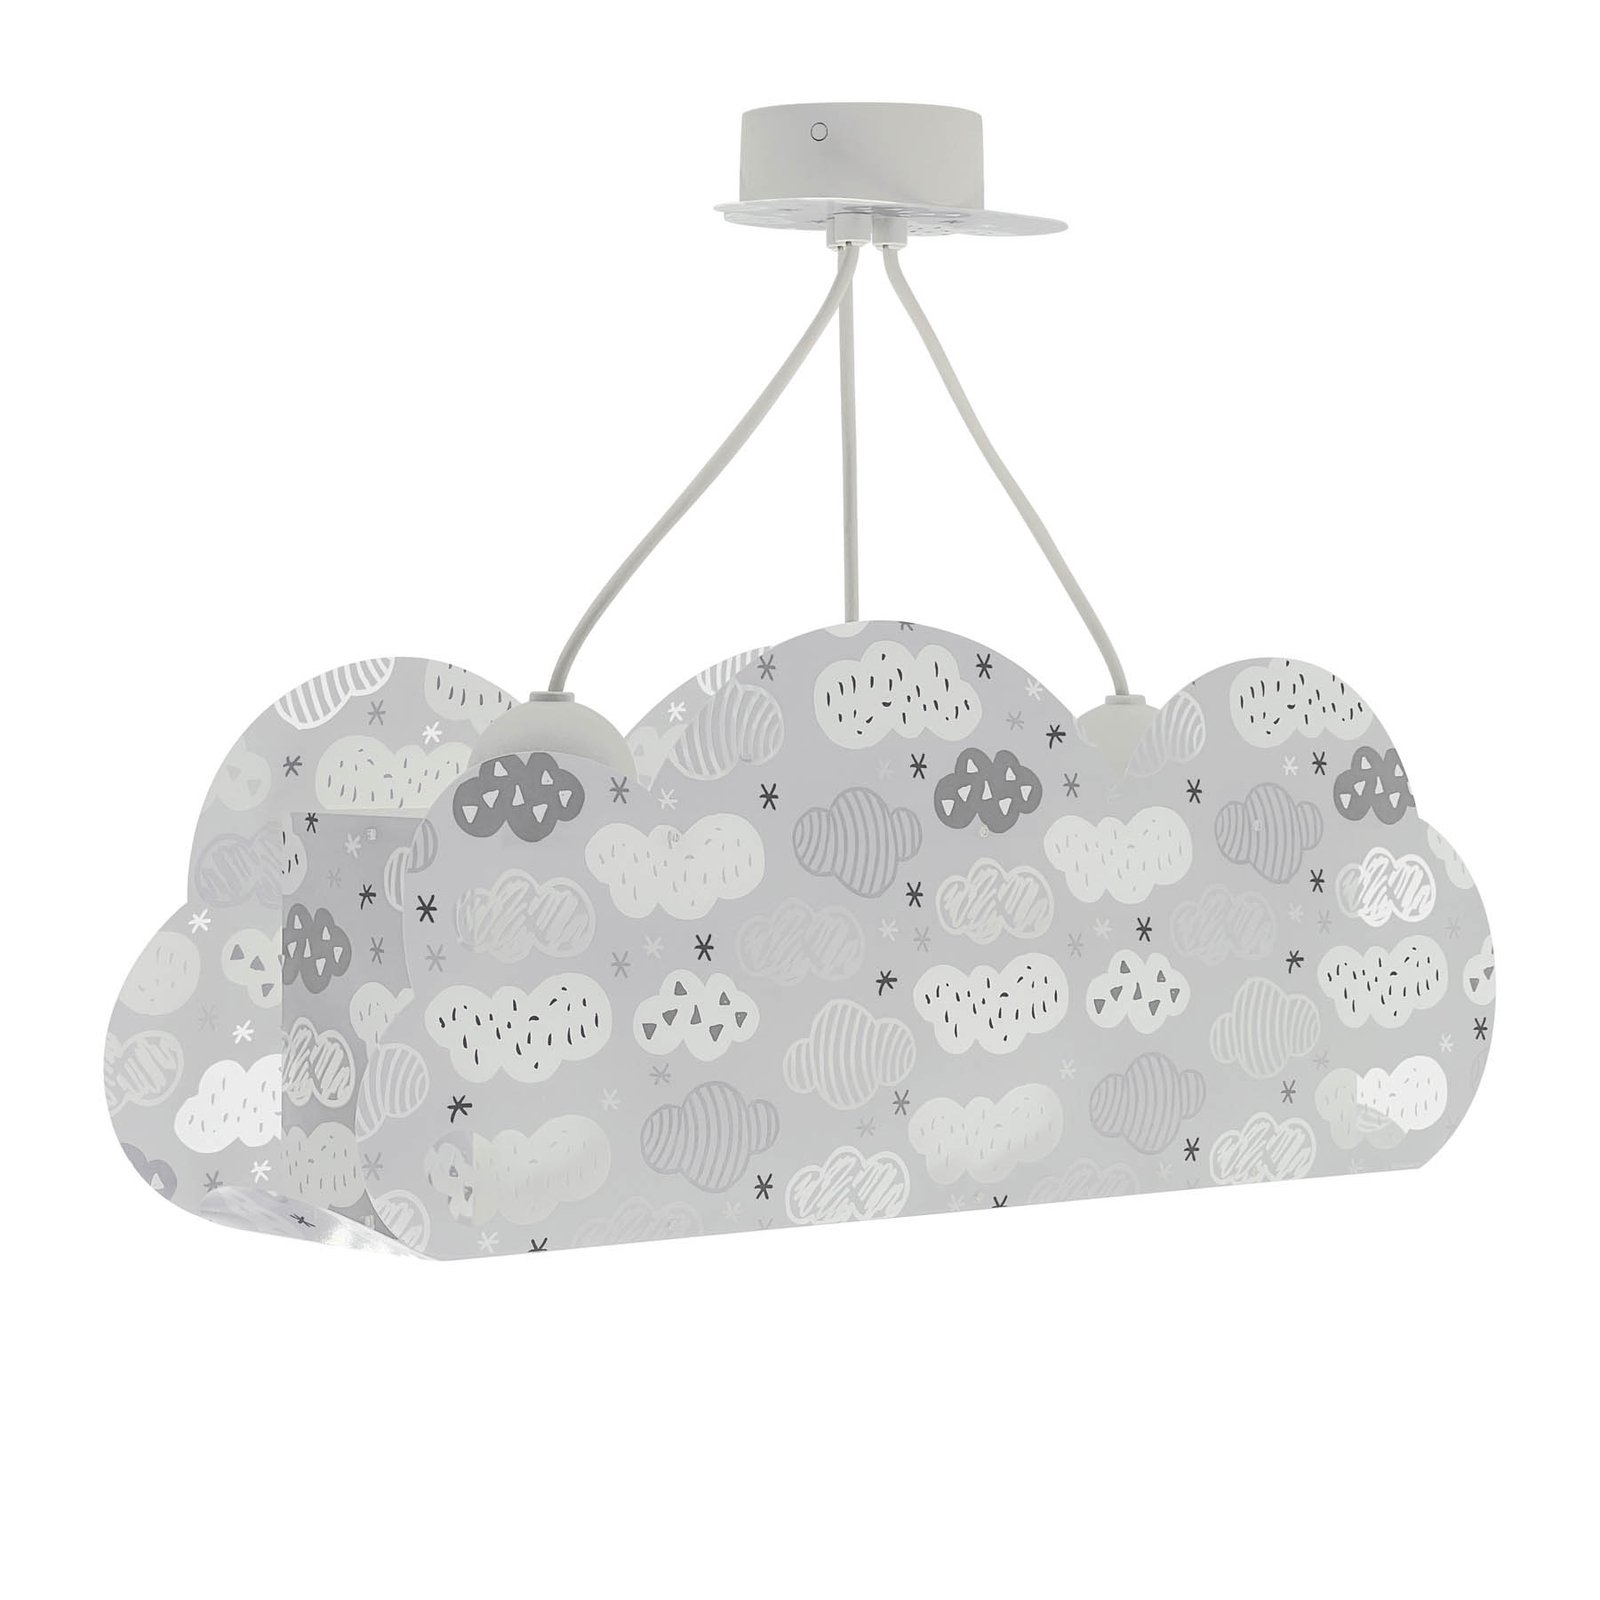 Dalber Lámpara colgante Cloud Grey en forma de nube, gris